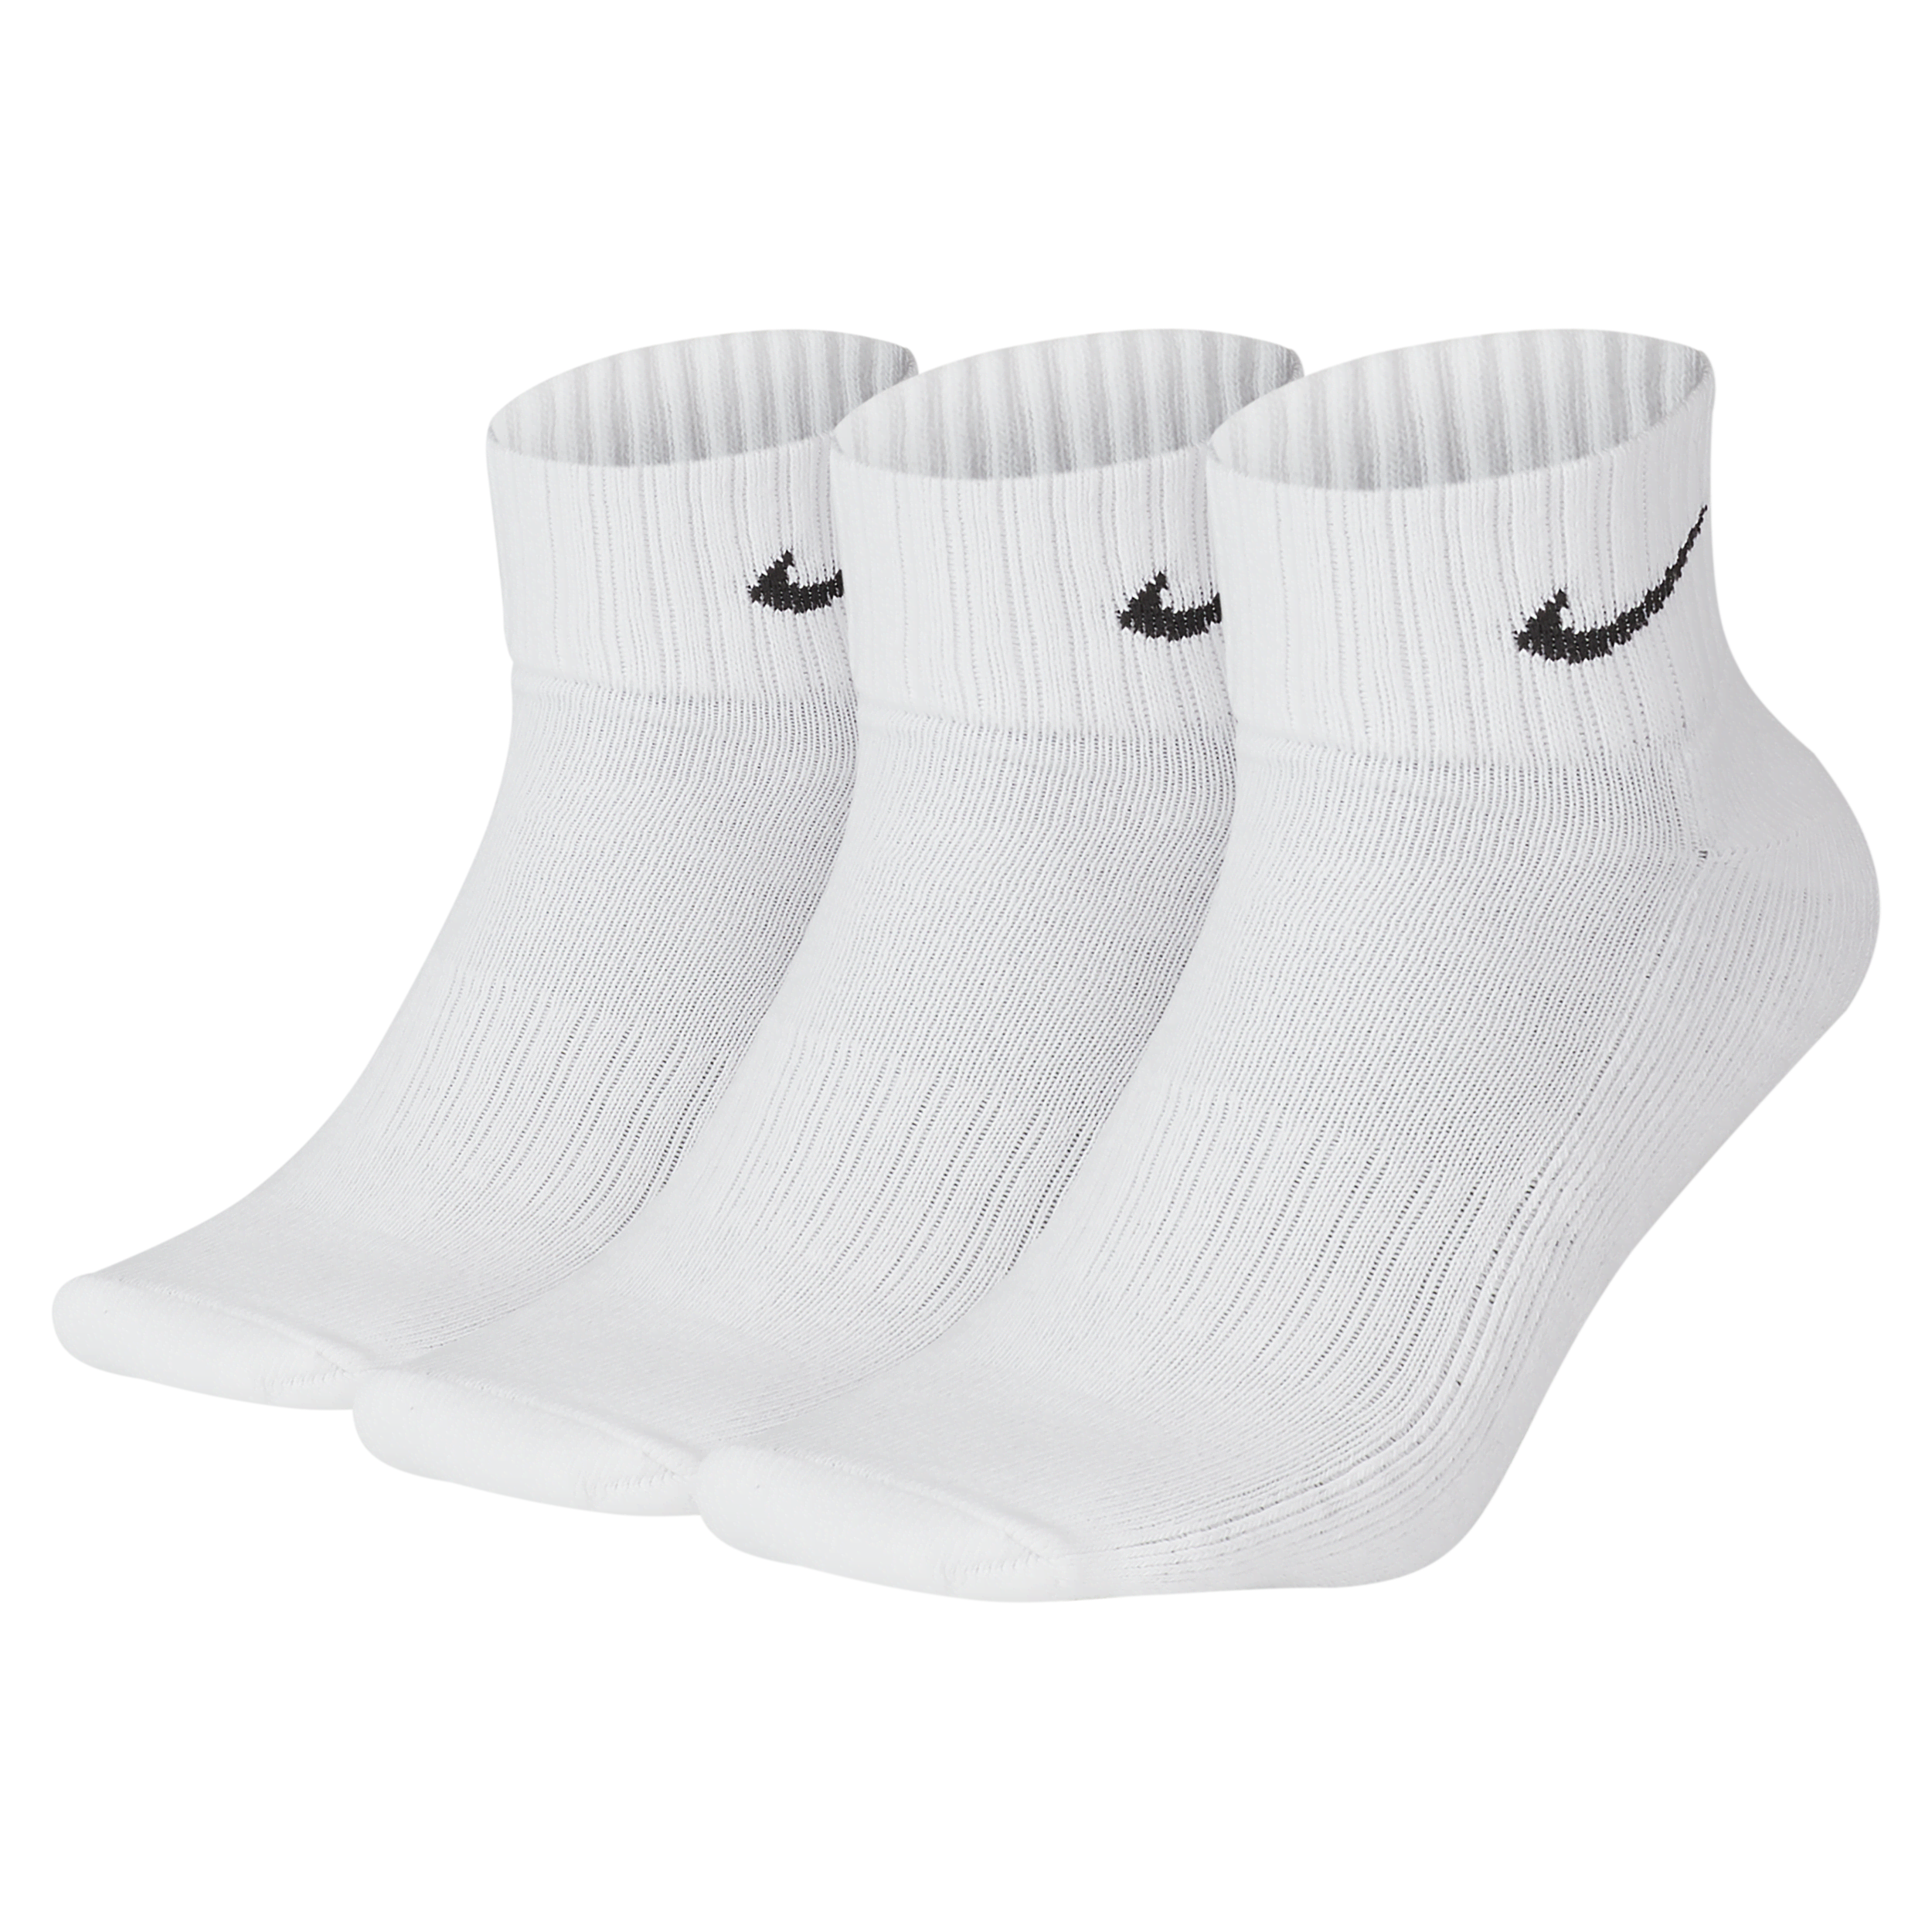 Nike Enkelsokken met demping (3 paar) - Wit